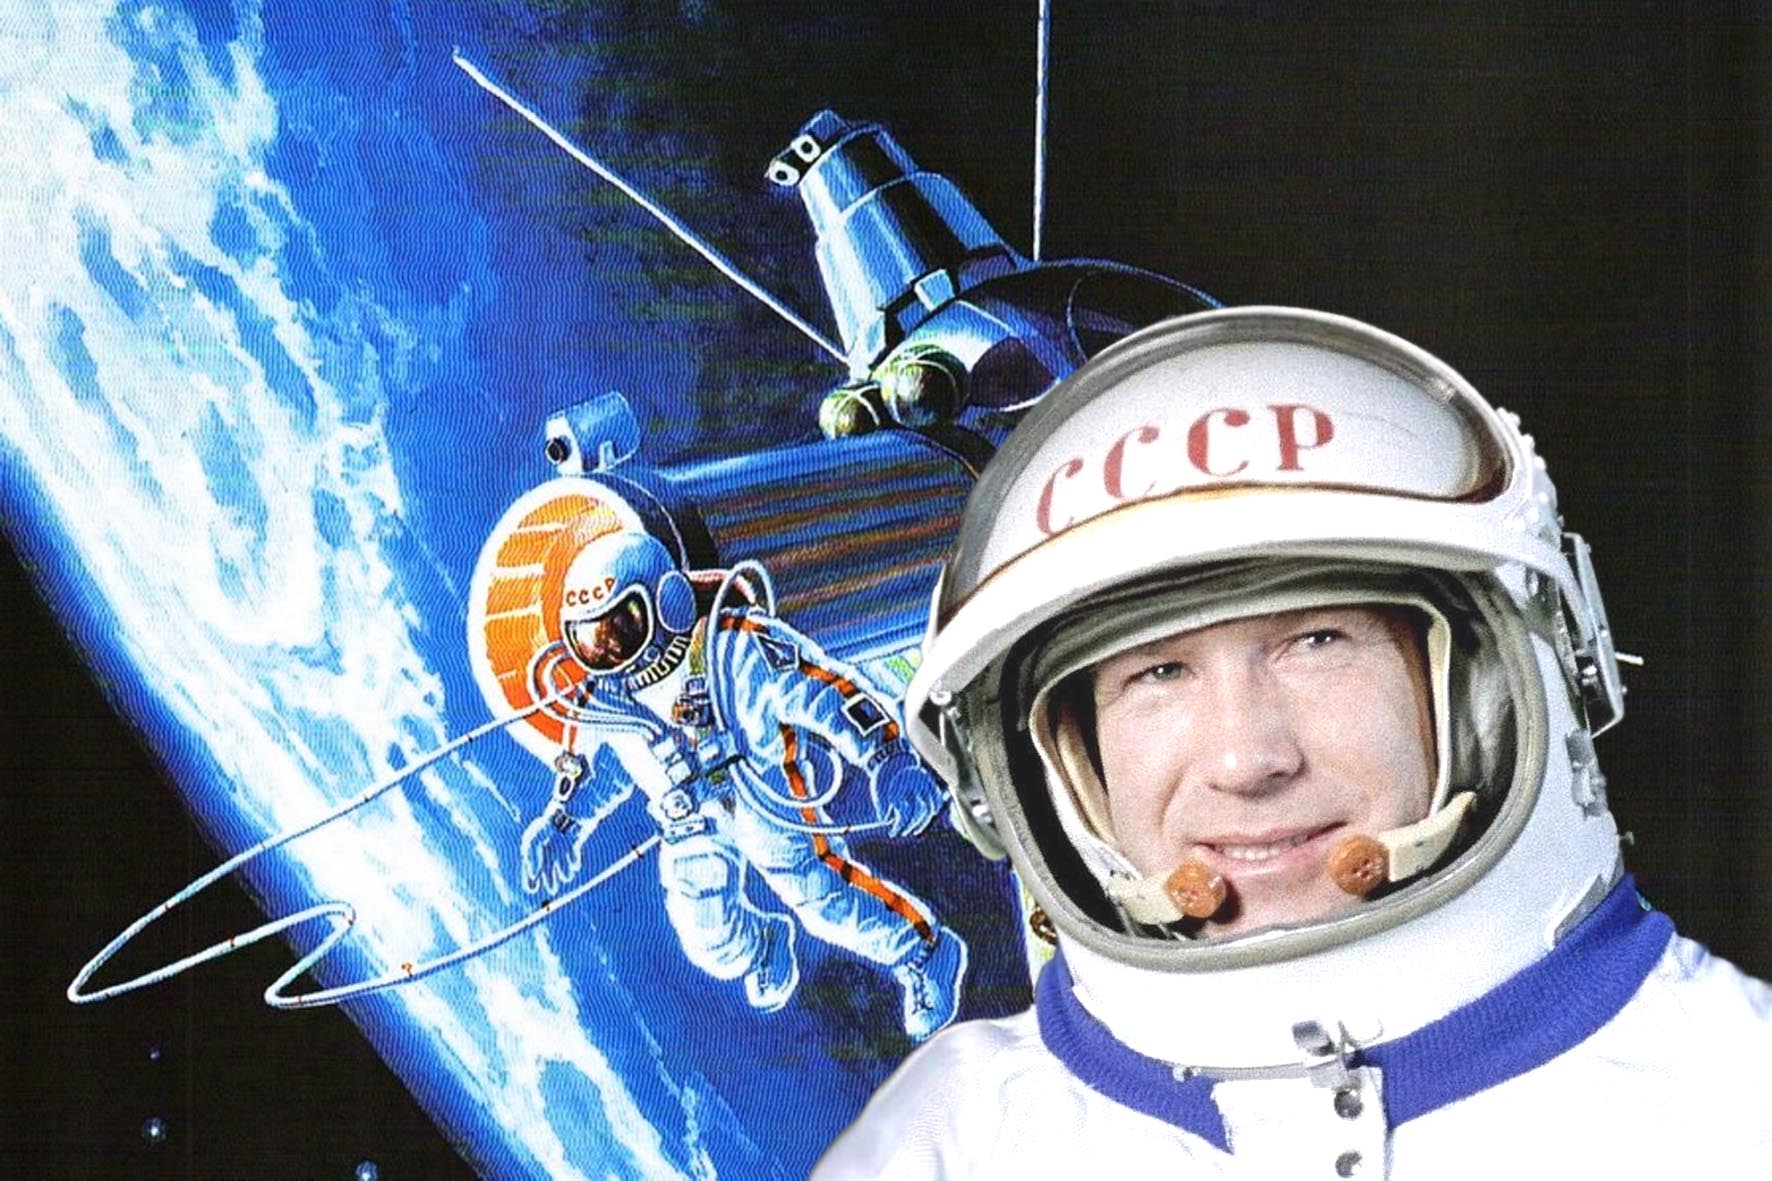 Видео первый человек в космосе. Выход в открытый космос Алексея Архиповича Леонова.